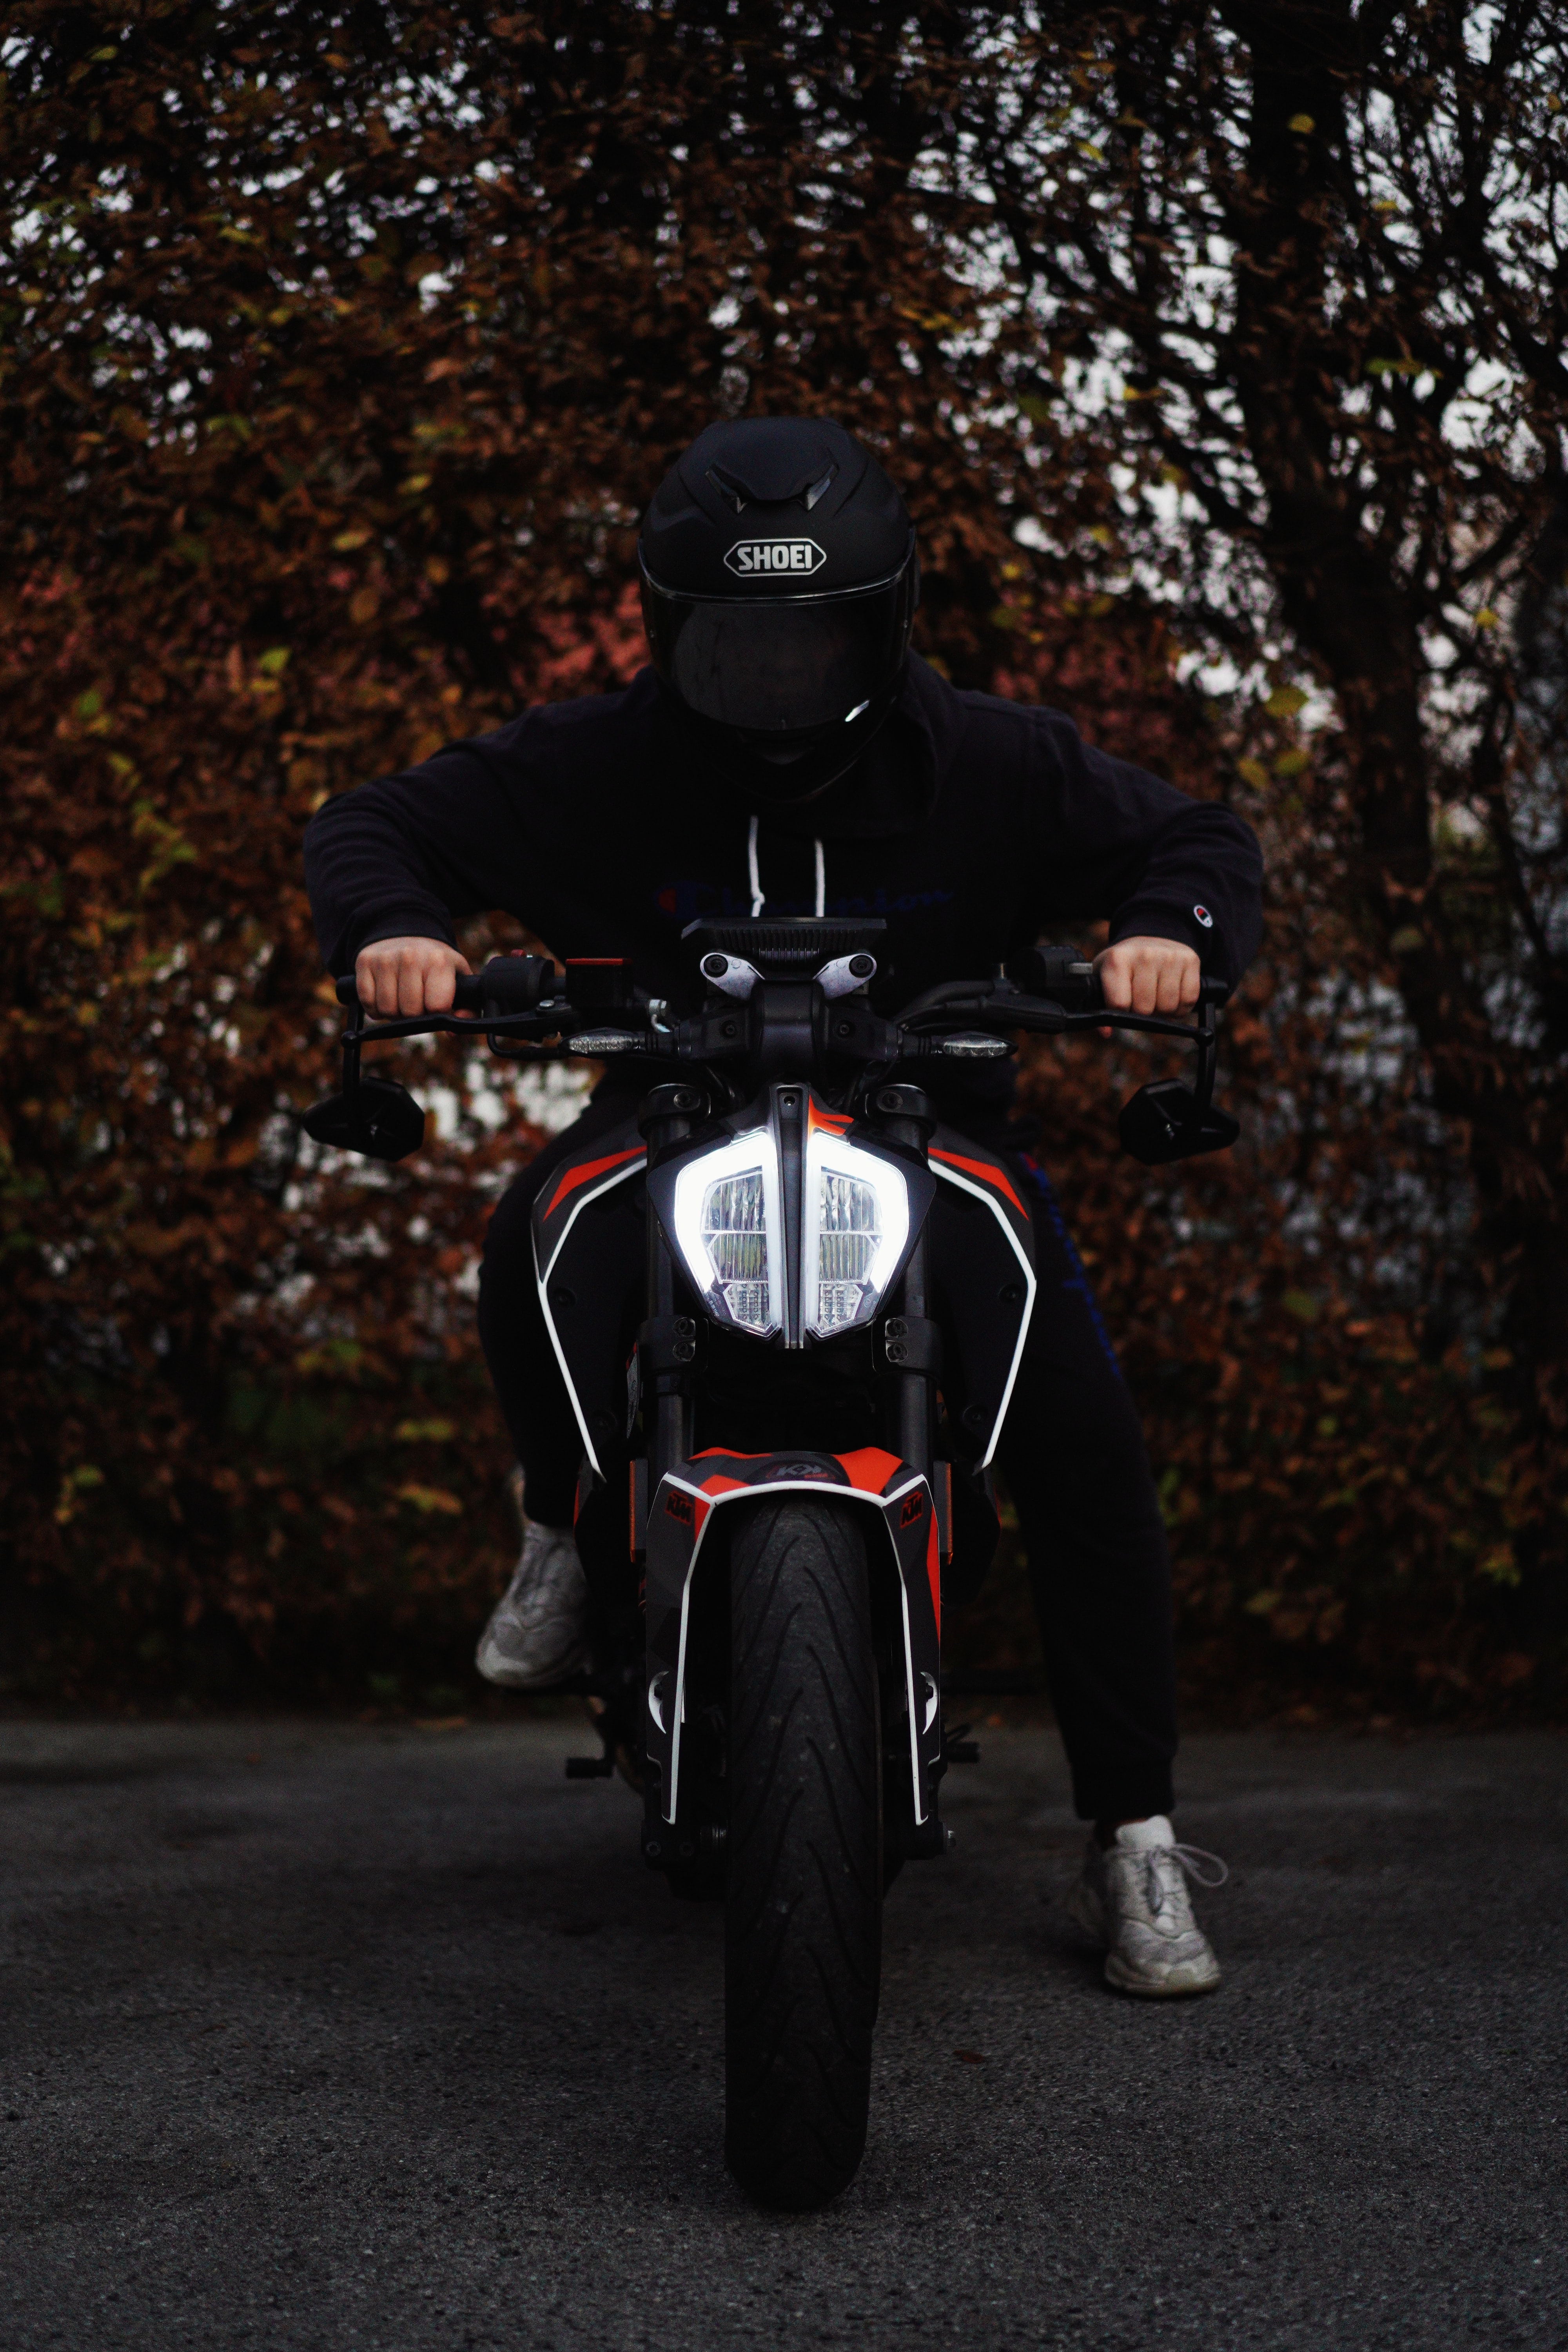 bike, motorcyclist, motorcycles, black, helmet, motorcycle